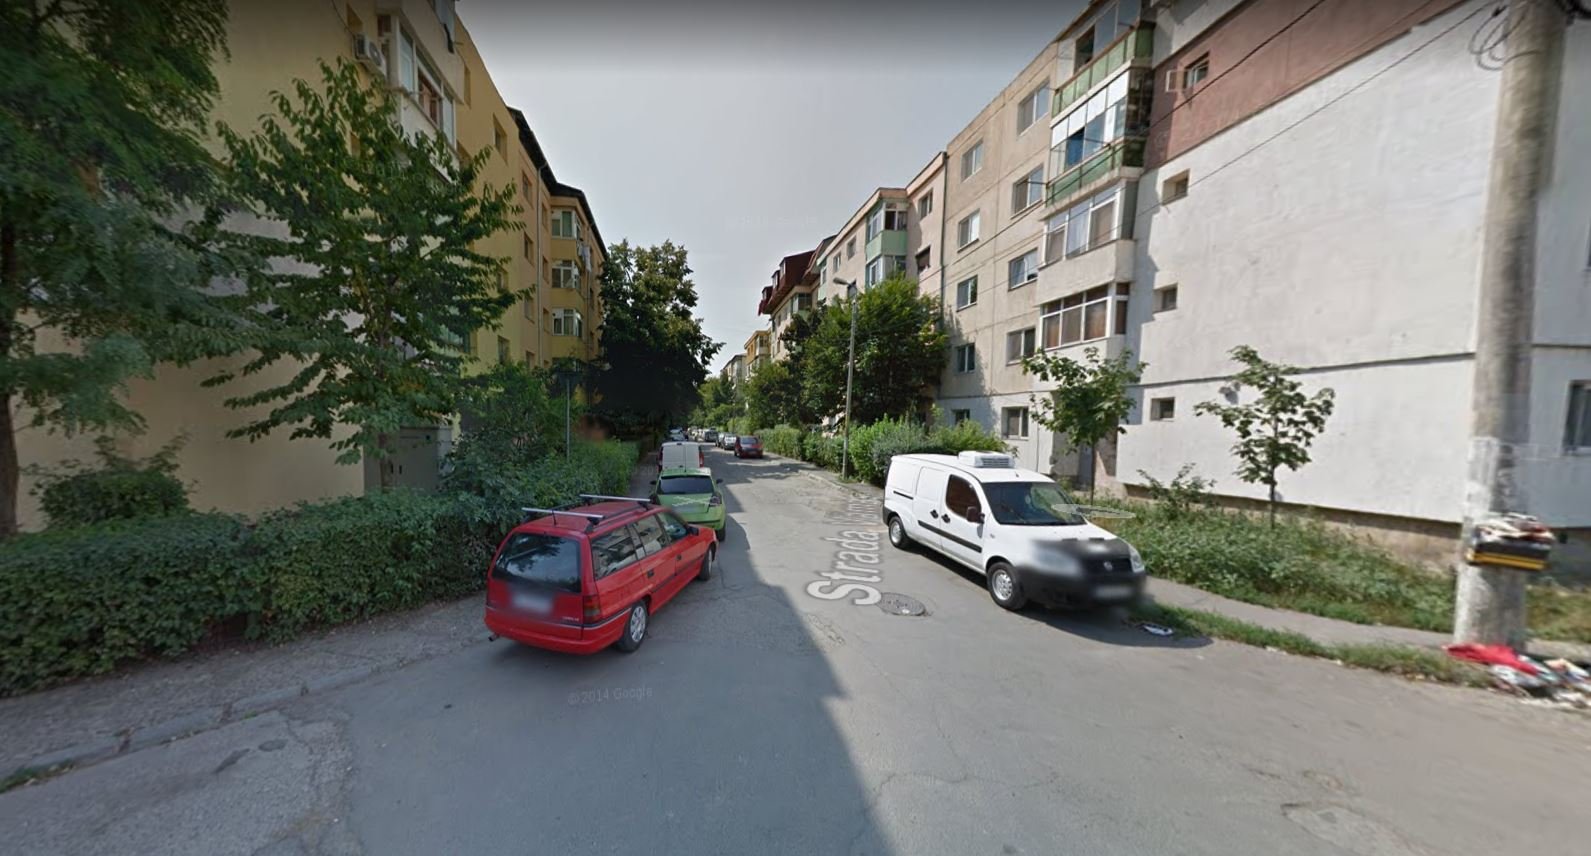  Restricții de circulație pe o stradă din cartierul Mircea cel Bătrân până marţi, 14 iulie